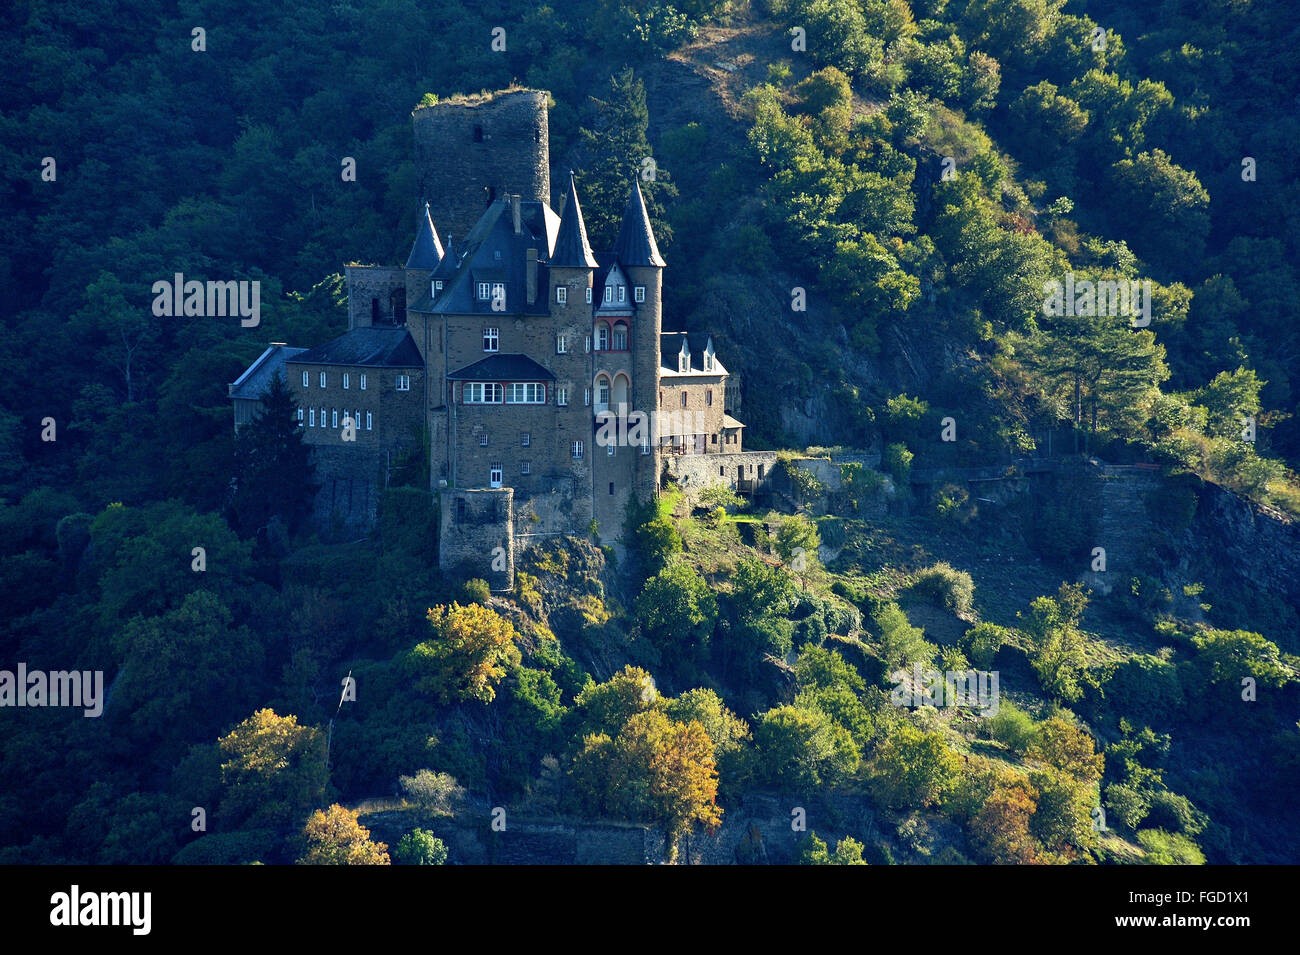 Château Katz touché par la première lumière du matin, la Vallée du Haut-Rhin moyen, Allemagne Banque D'Images